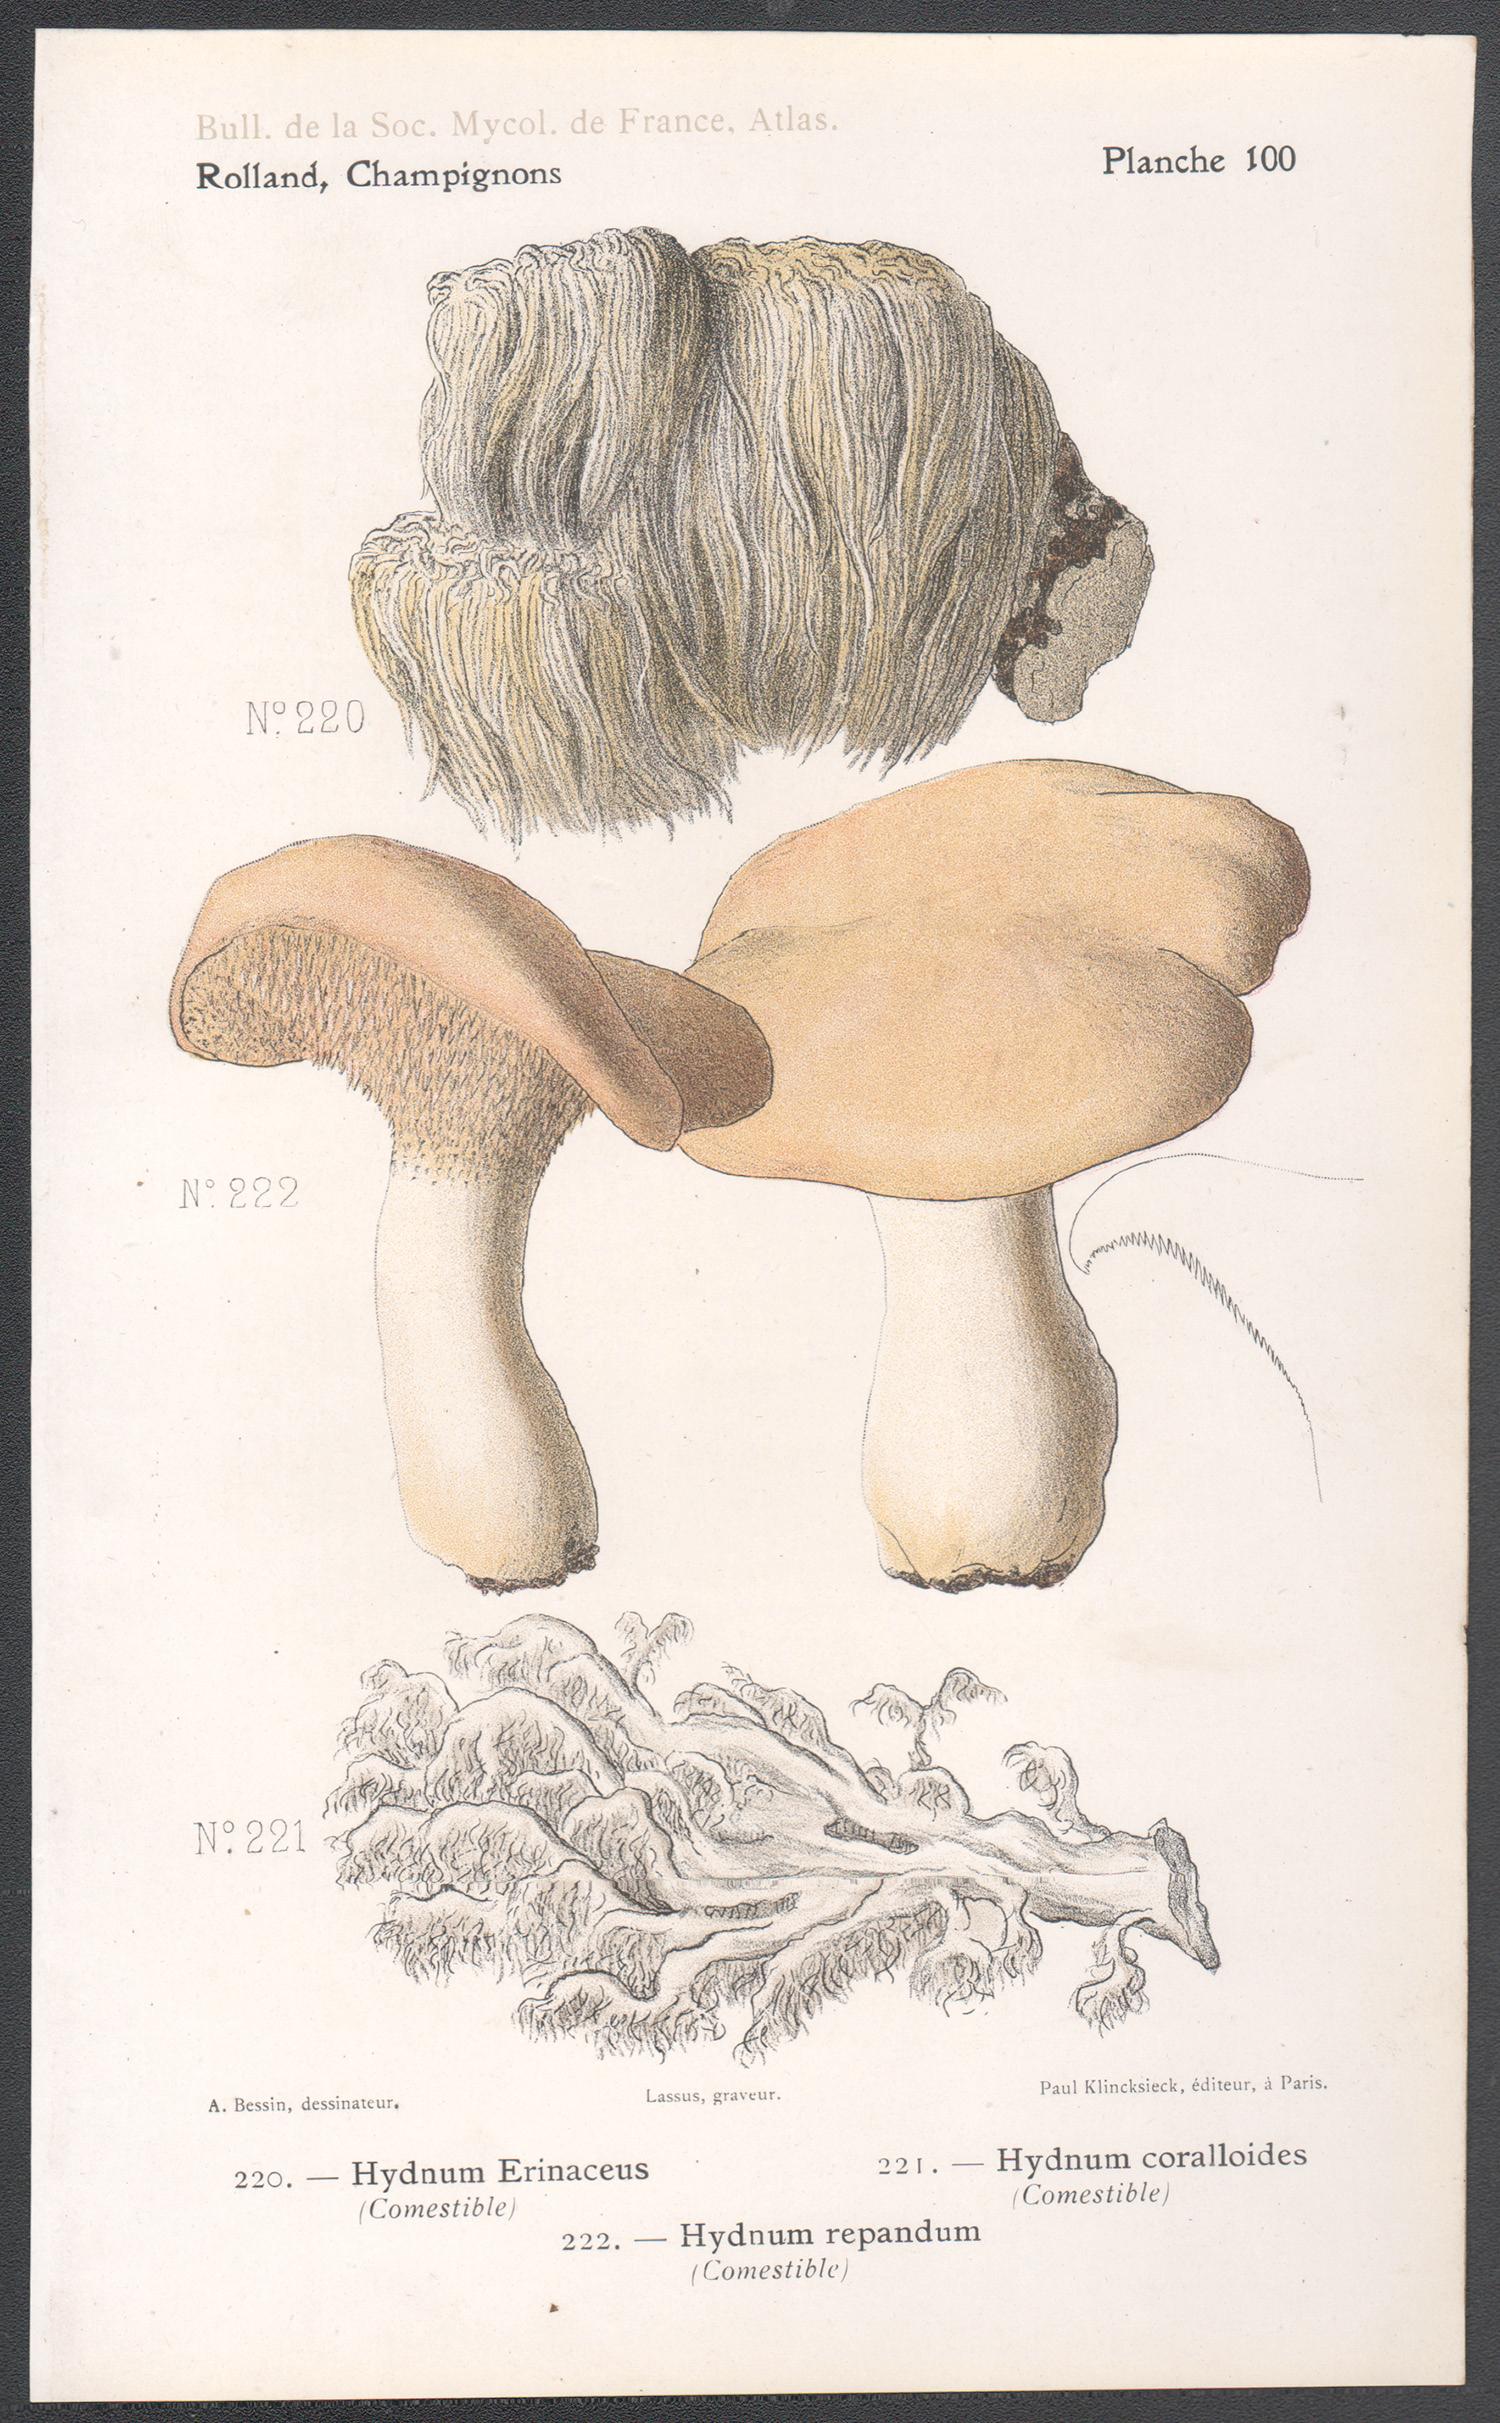 Französische antike Pilz-Chromolithographie von Champignons, 1910 – Print von Lassus after Aimé Bessin